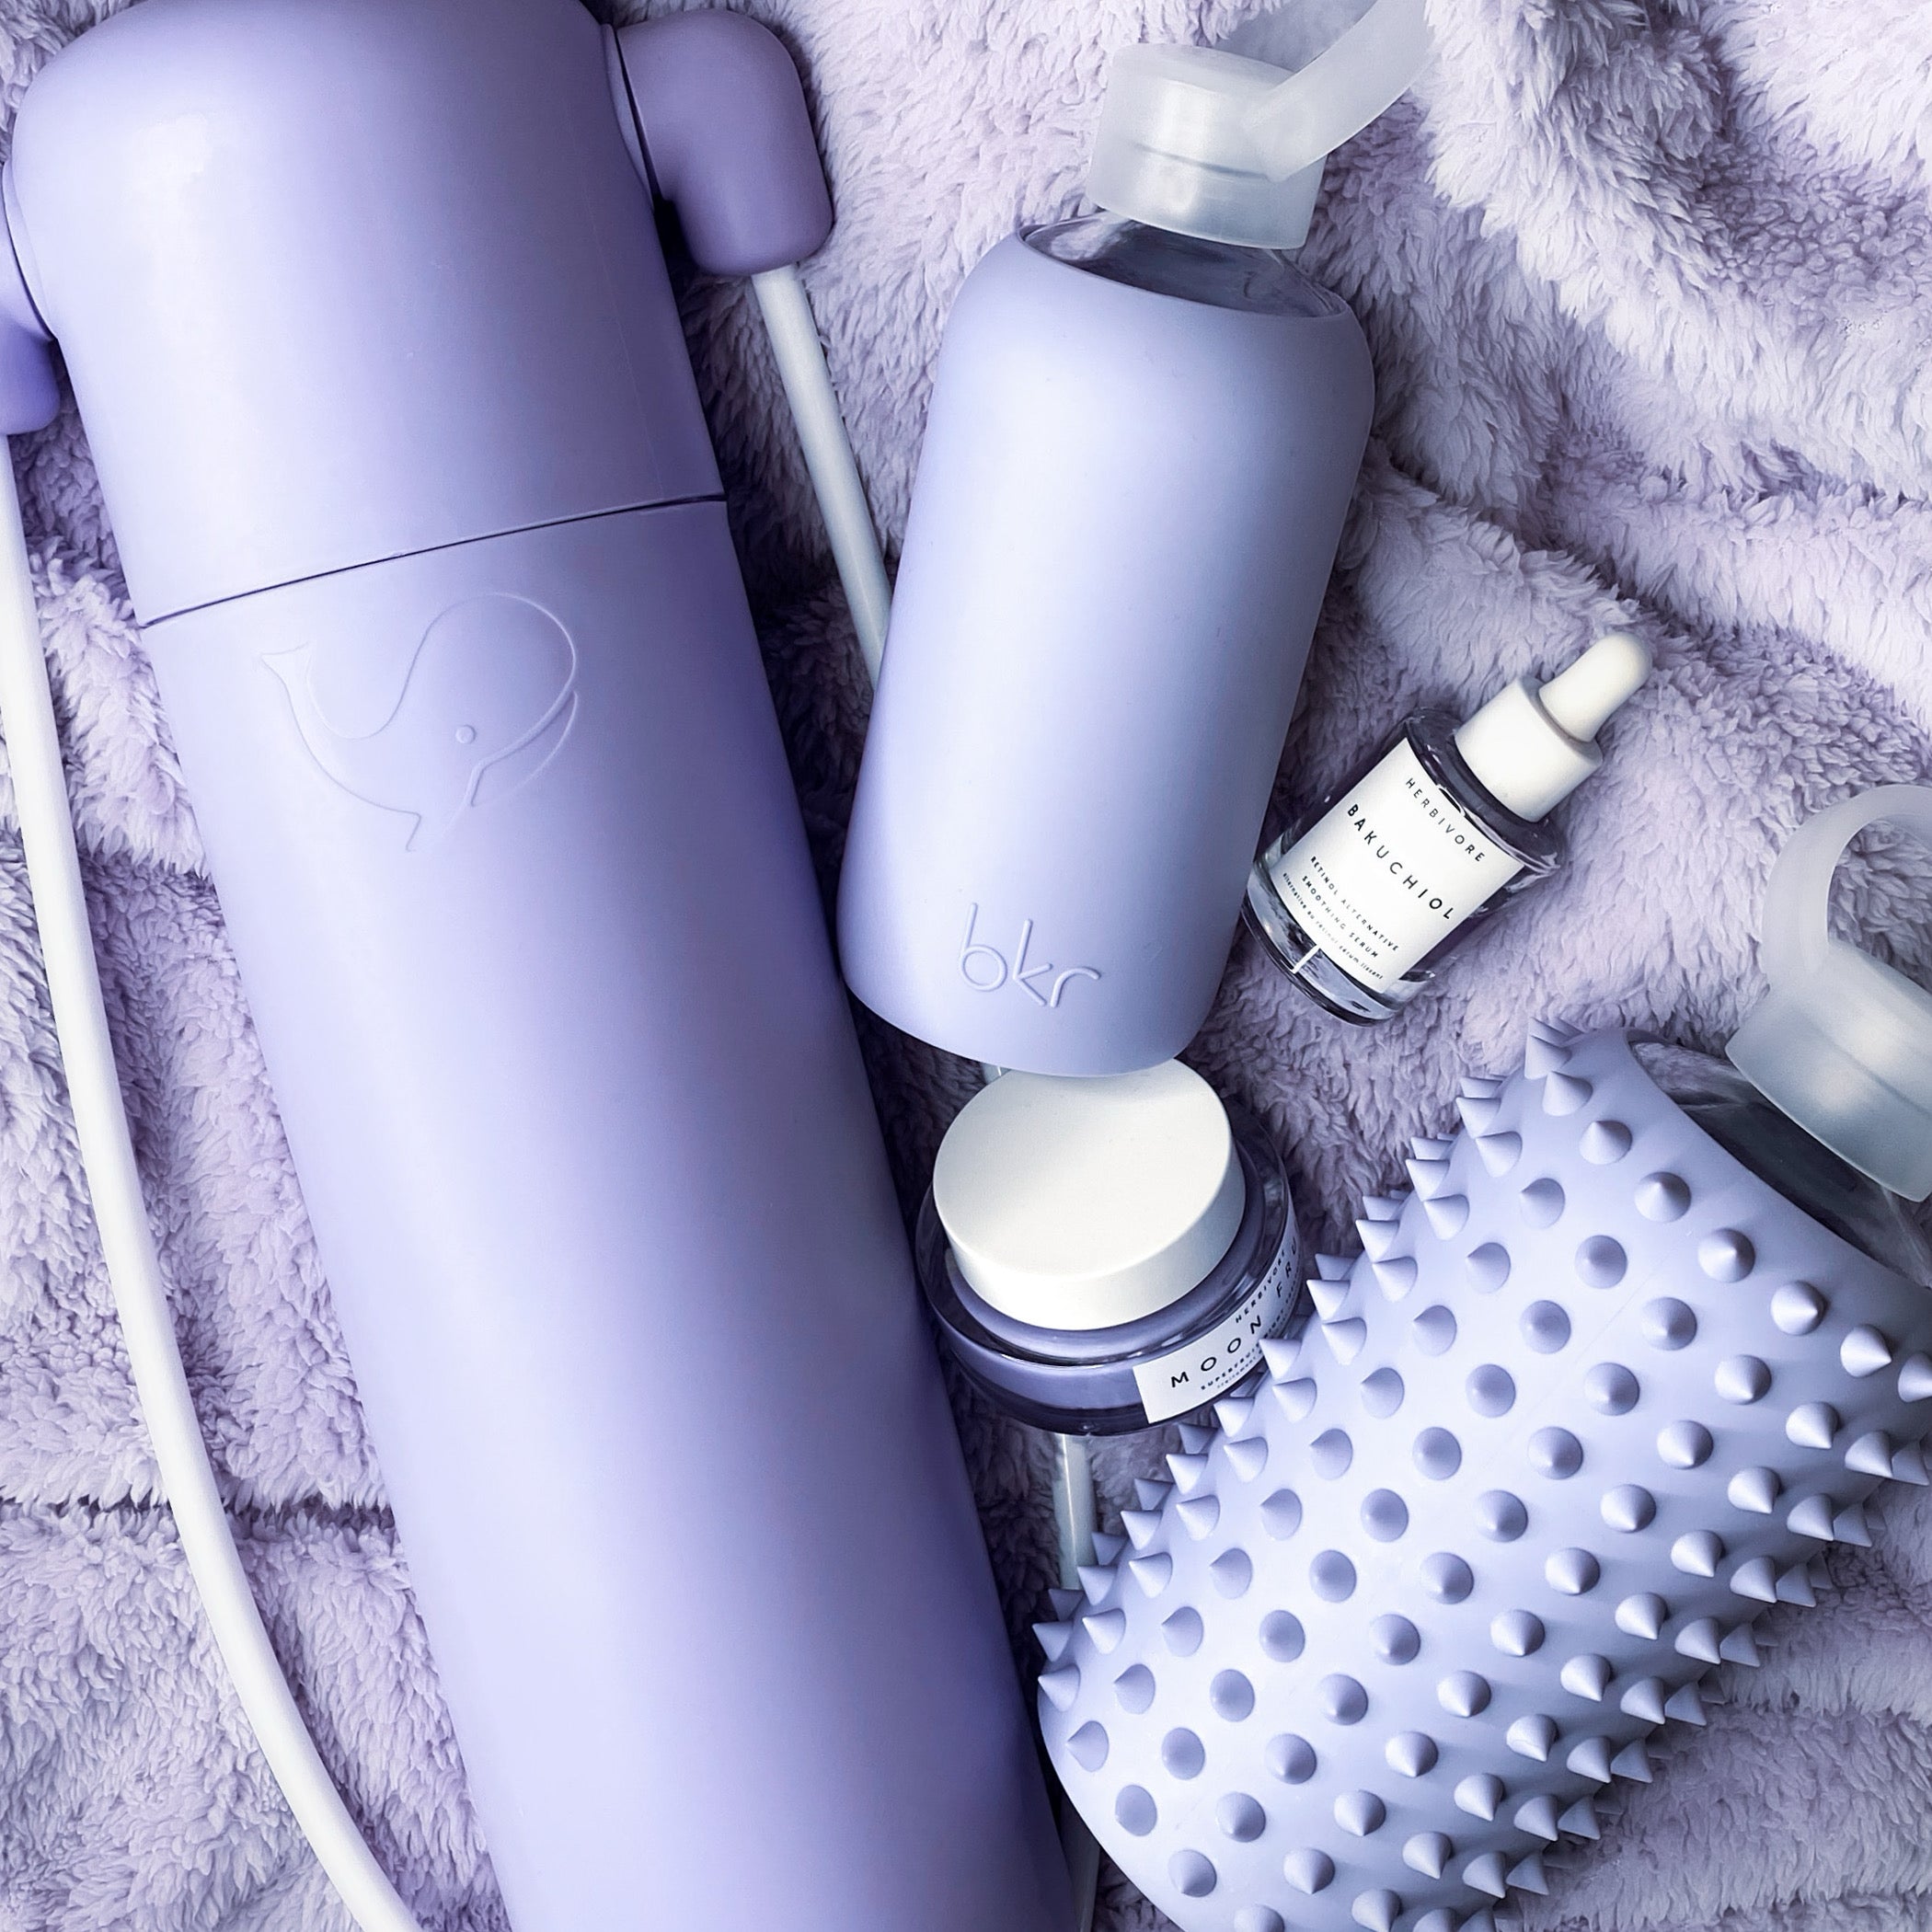 bluedot x bkr kit - sustainable bottled water kit